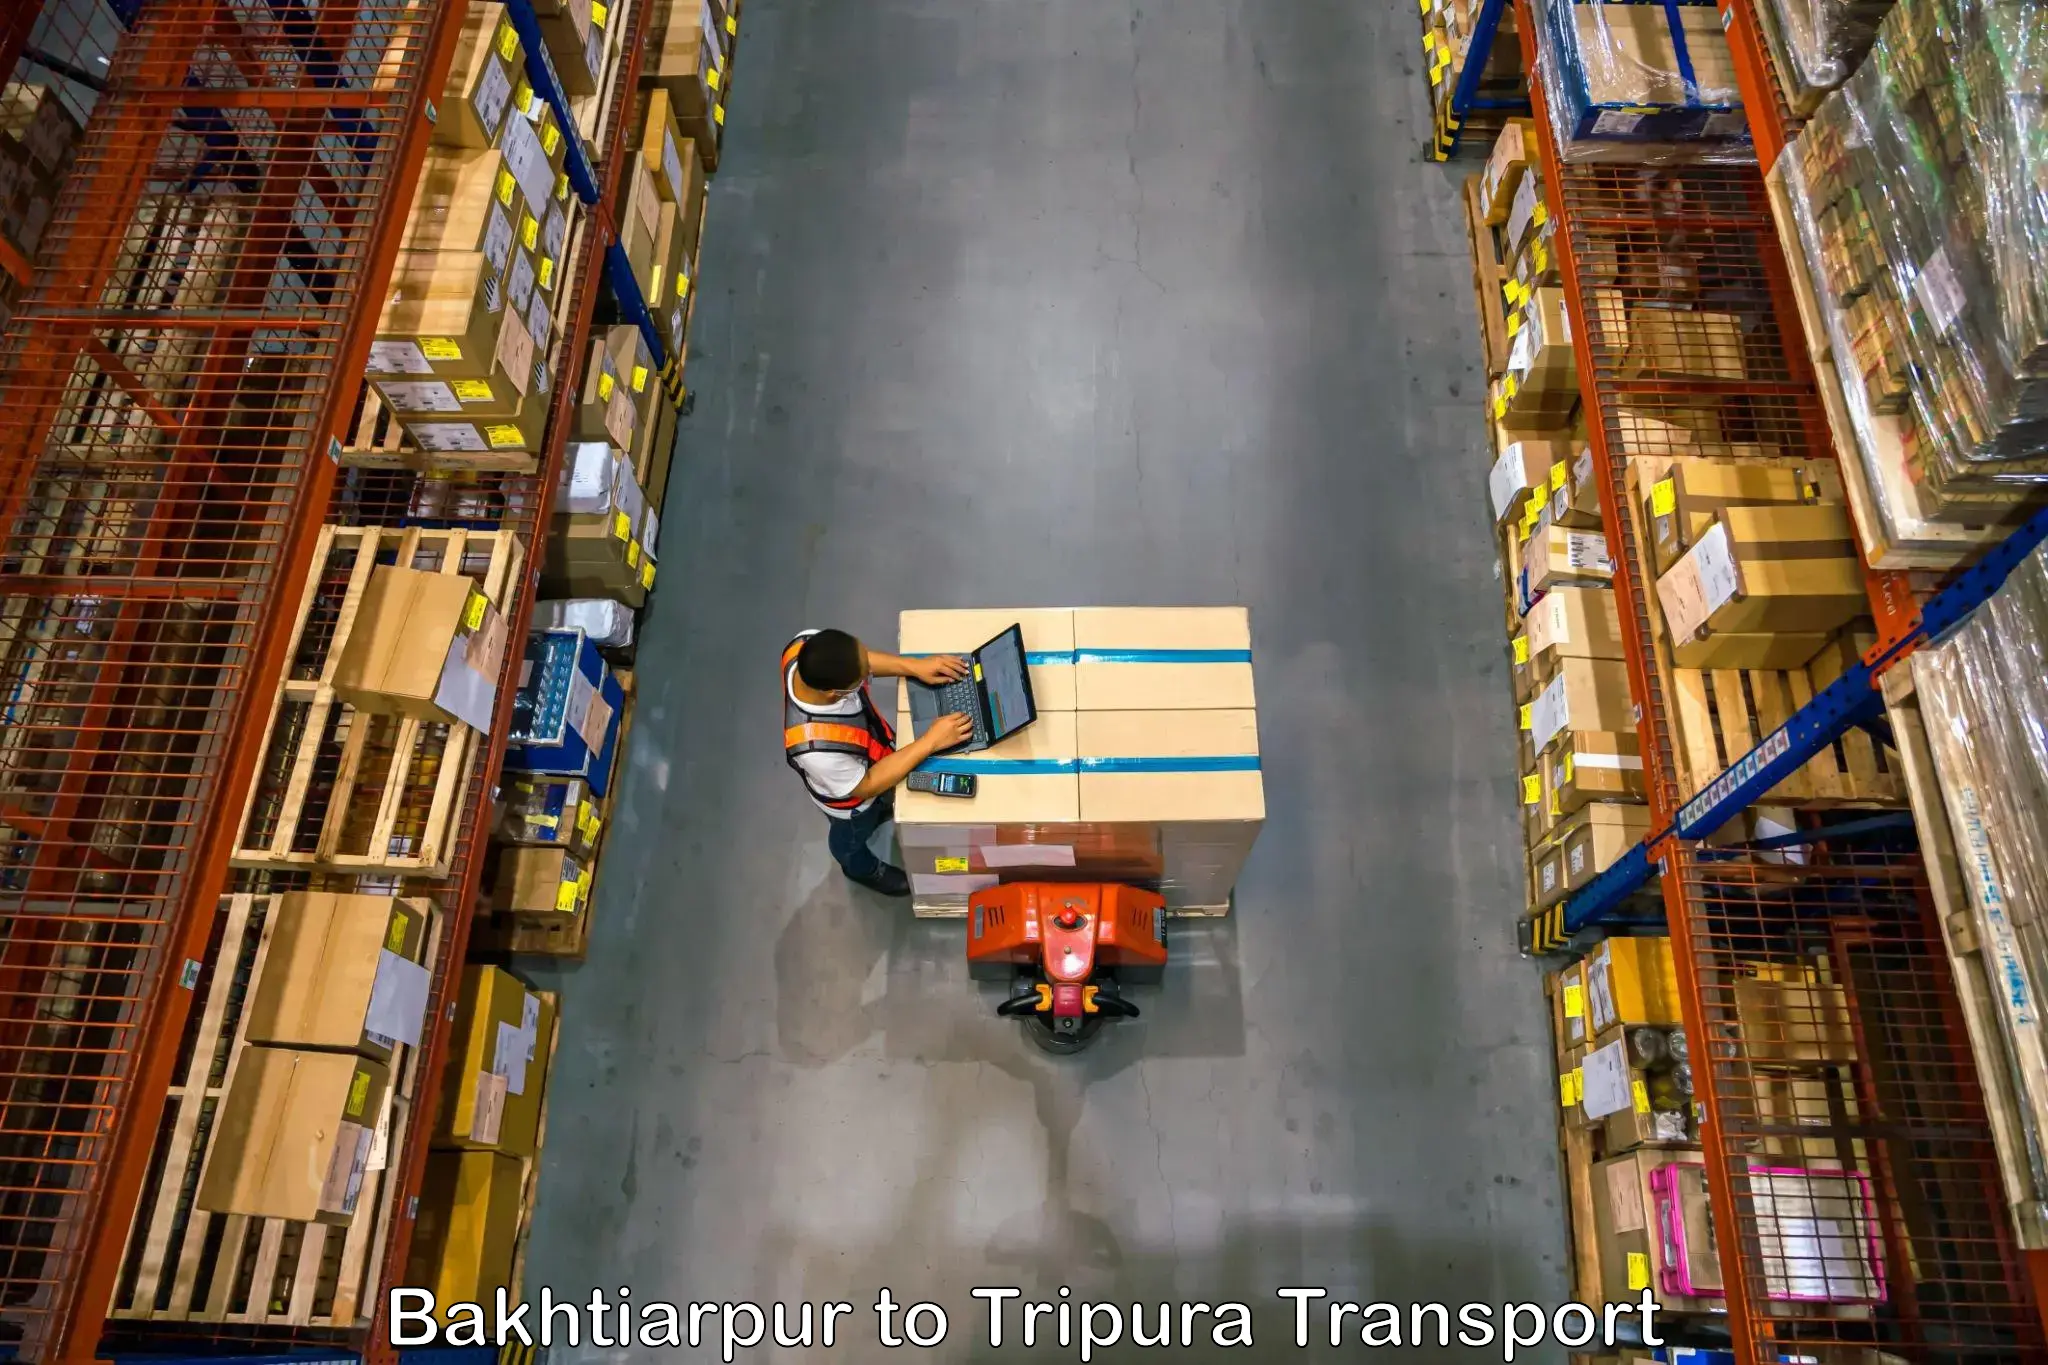 Daily transport service Bakhtiarpur to Kailashahar